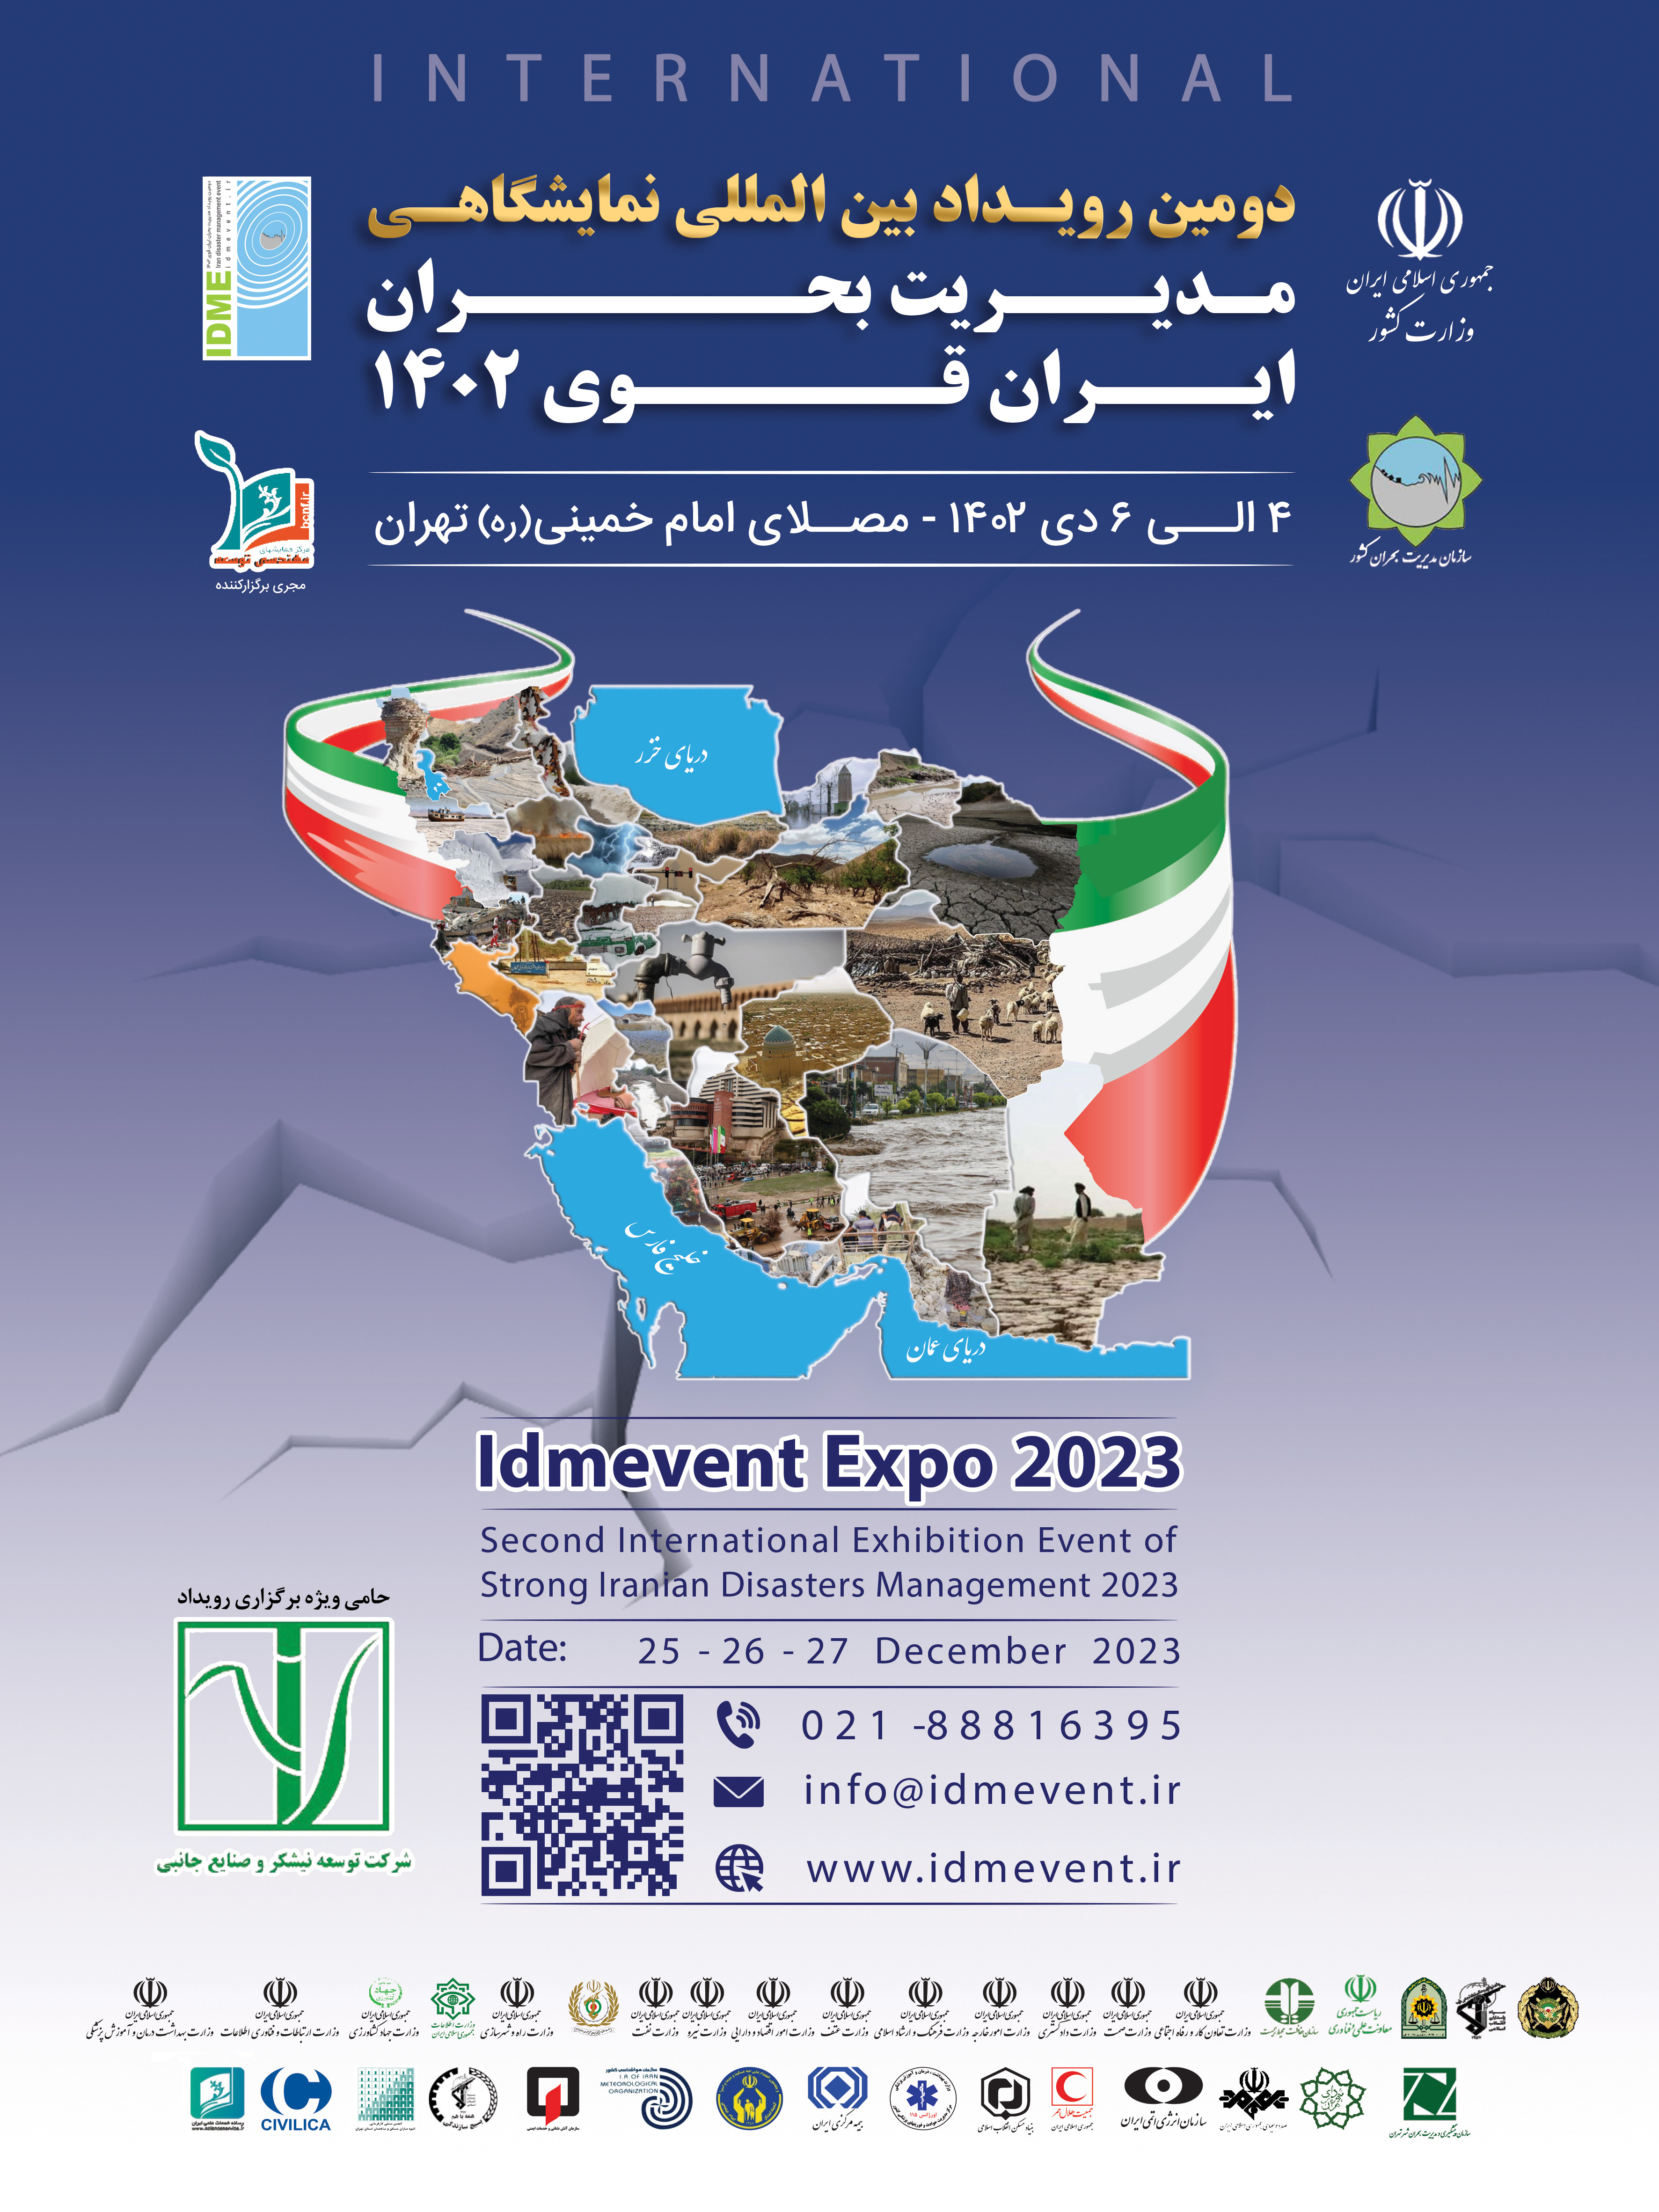 دومین رویداد بین المللی نمایشگاهی مدیریت بحران ایران قوی ۱۴۰۲ برگزار می شود